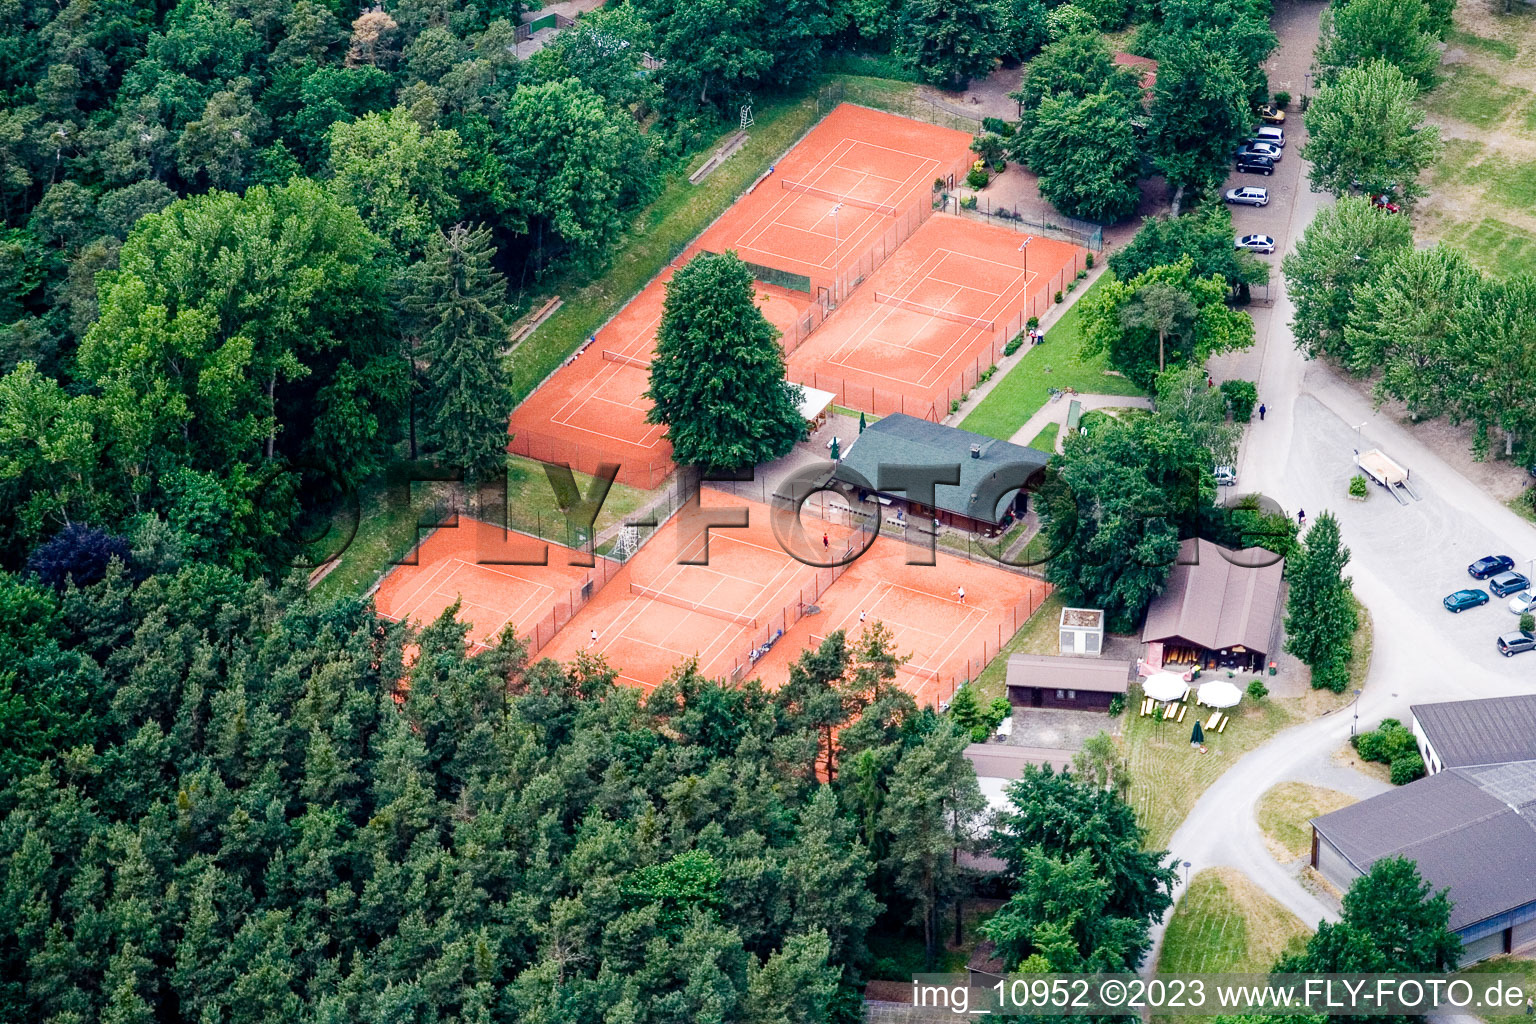 Club de tennis à Rülzheim dans le département Rhénanie-Palatinat, Allemagne vue d'en haut